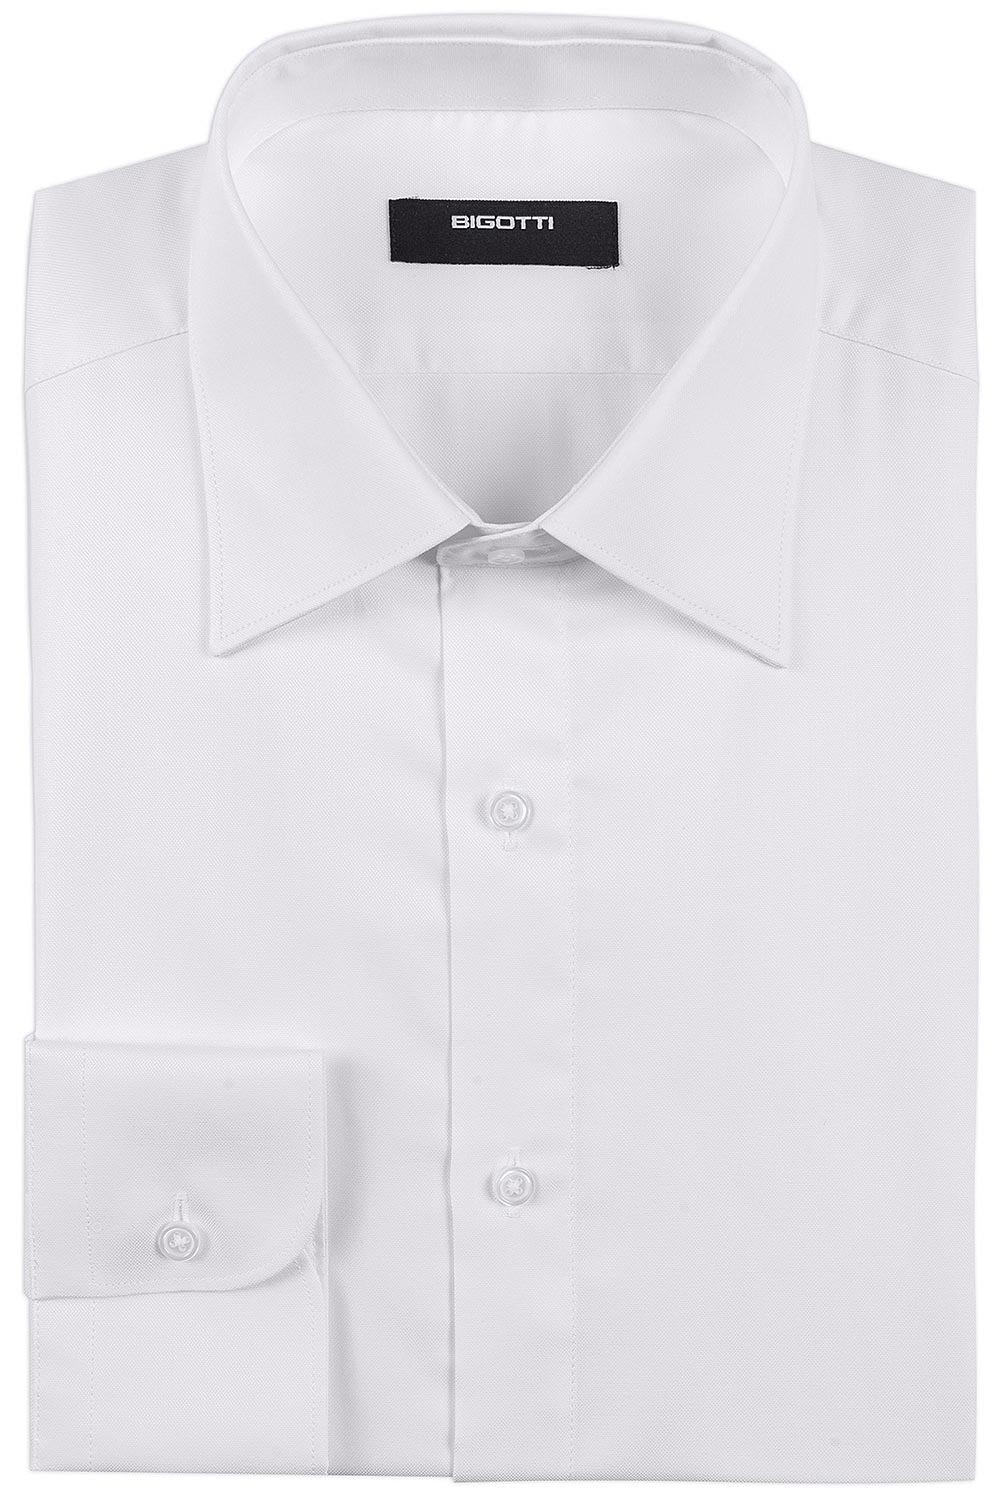 Shaped white plain shirt 0